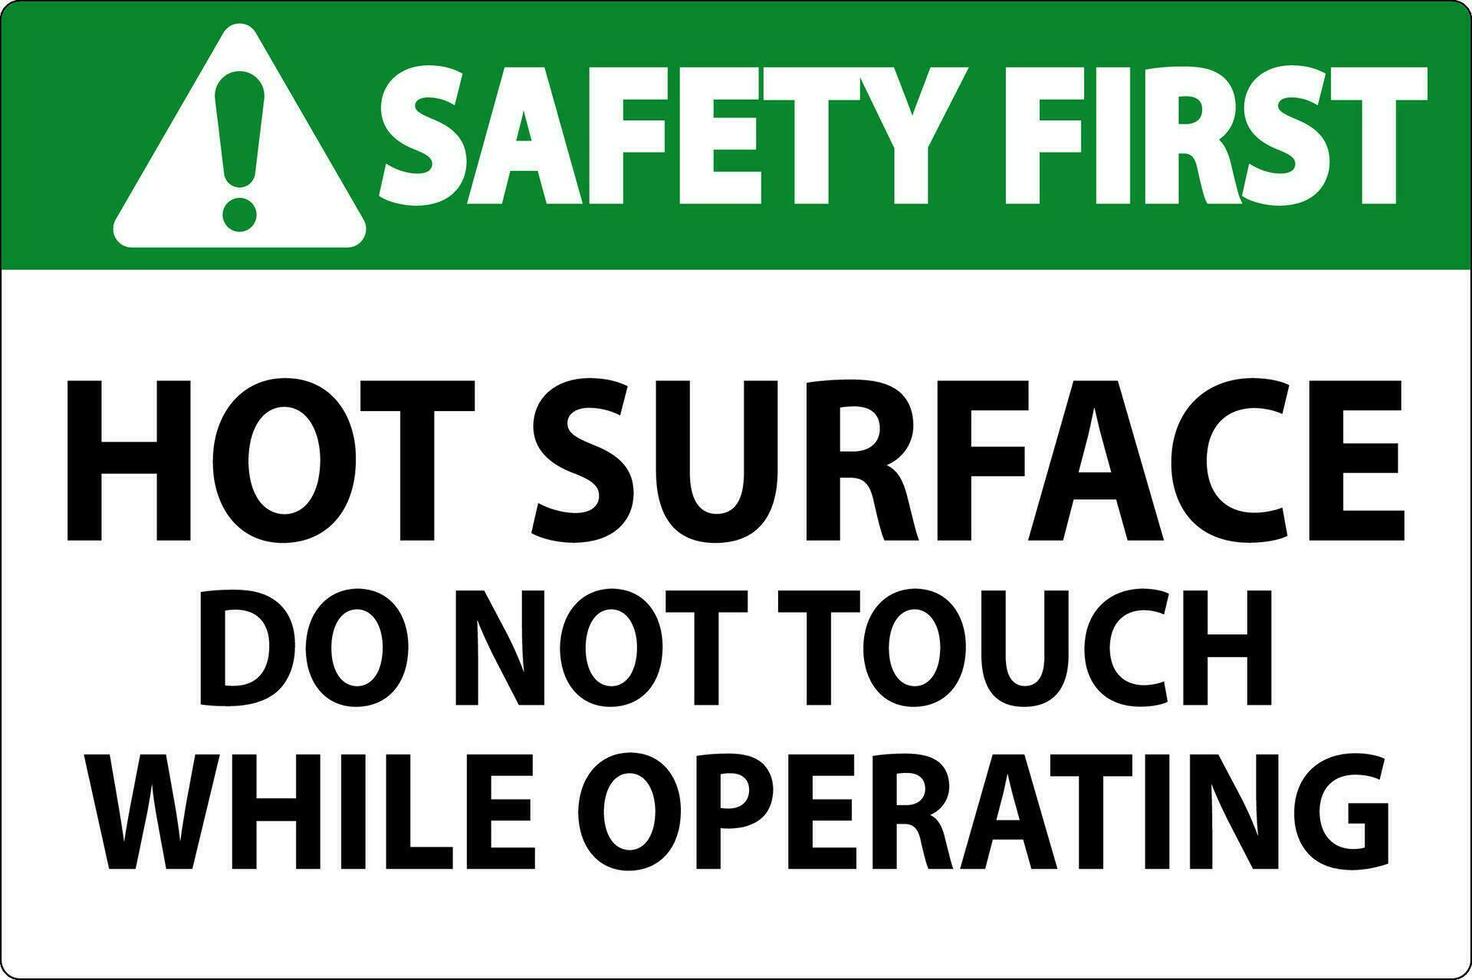 la seguridad primero firmar caliente superficie - hacer no toque mientras operando vector